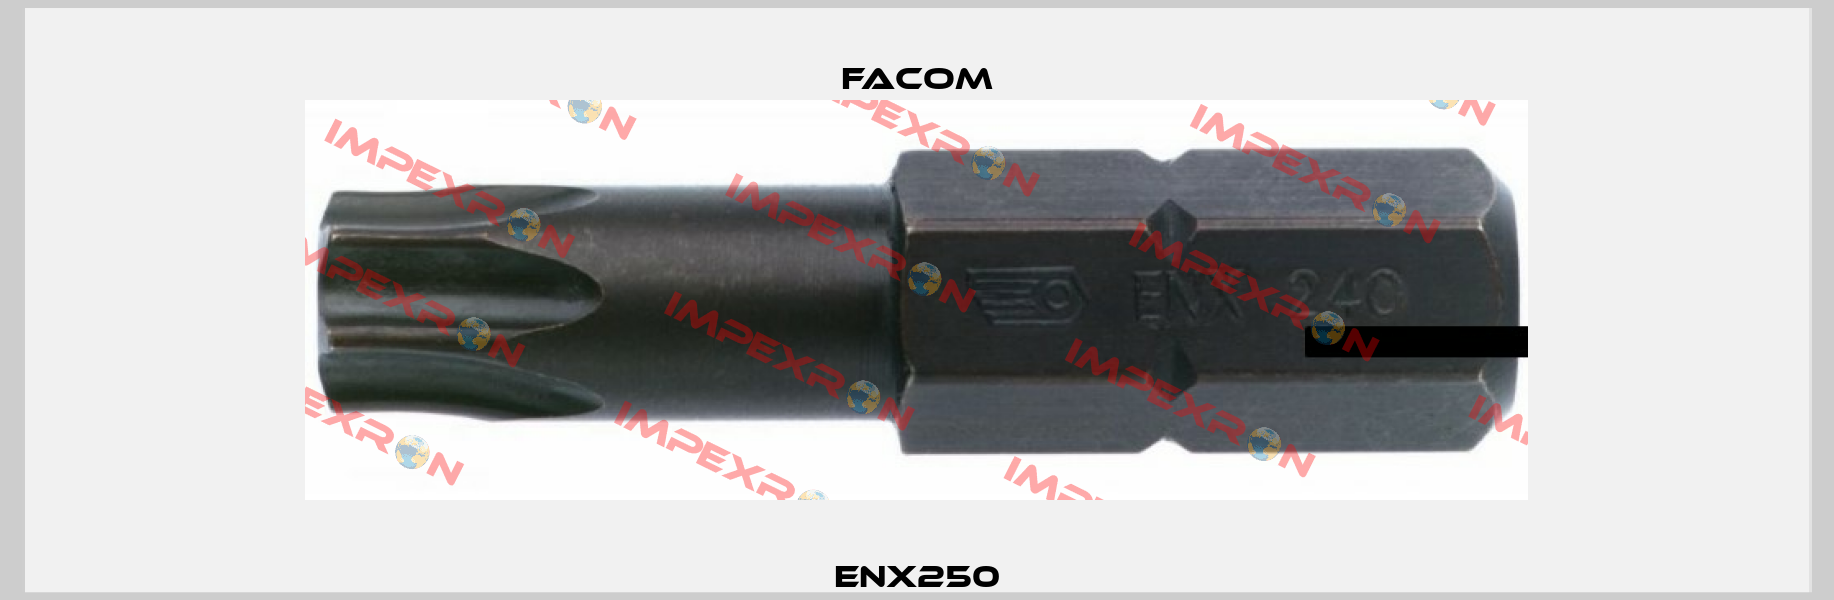 ENX250 Facom